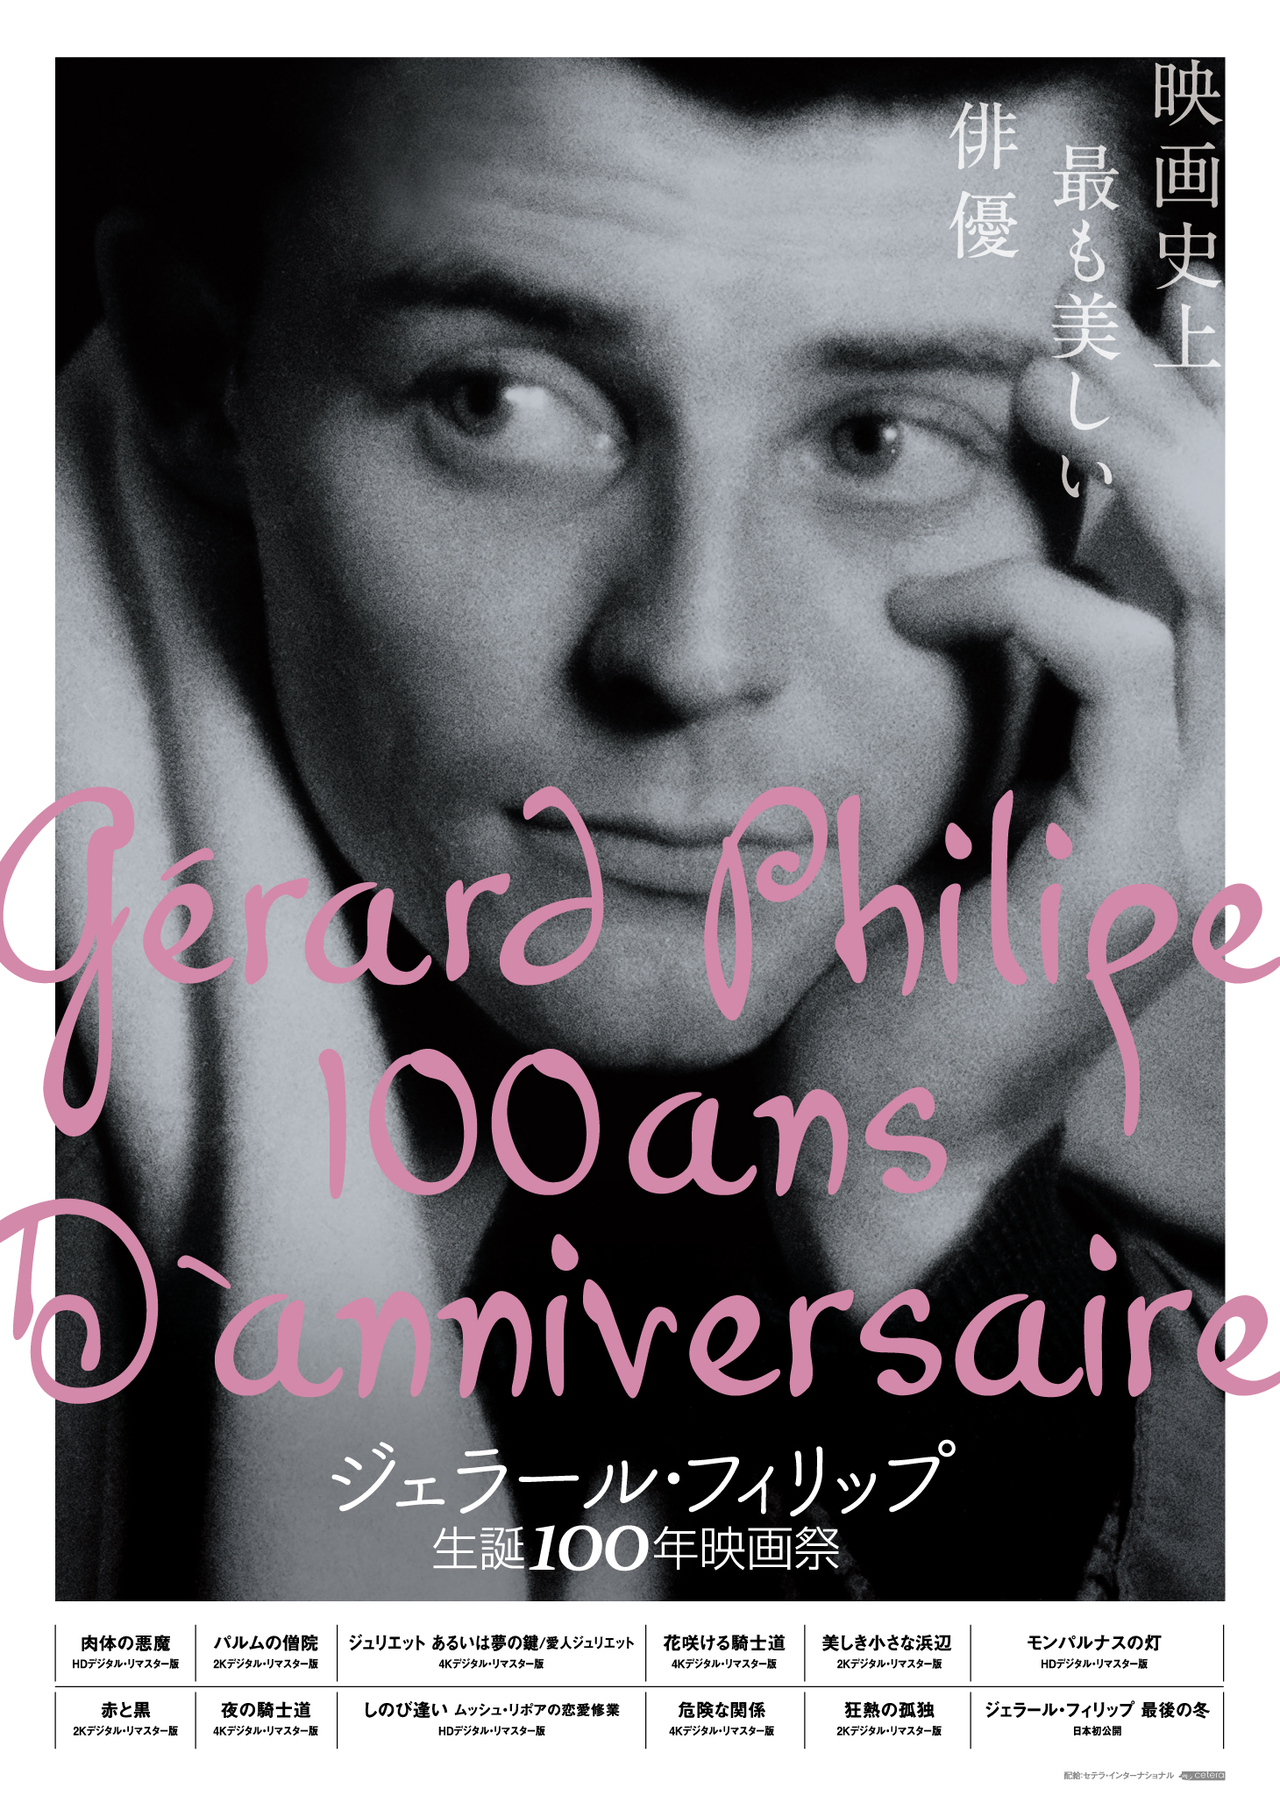 ジェラール・フィリップ生誕100年映画祭」ラインナップ発表